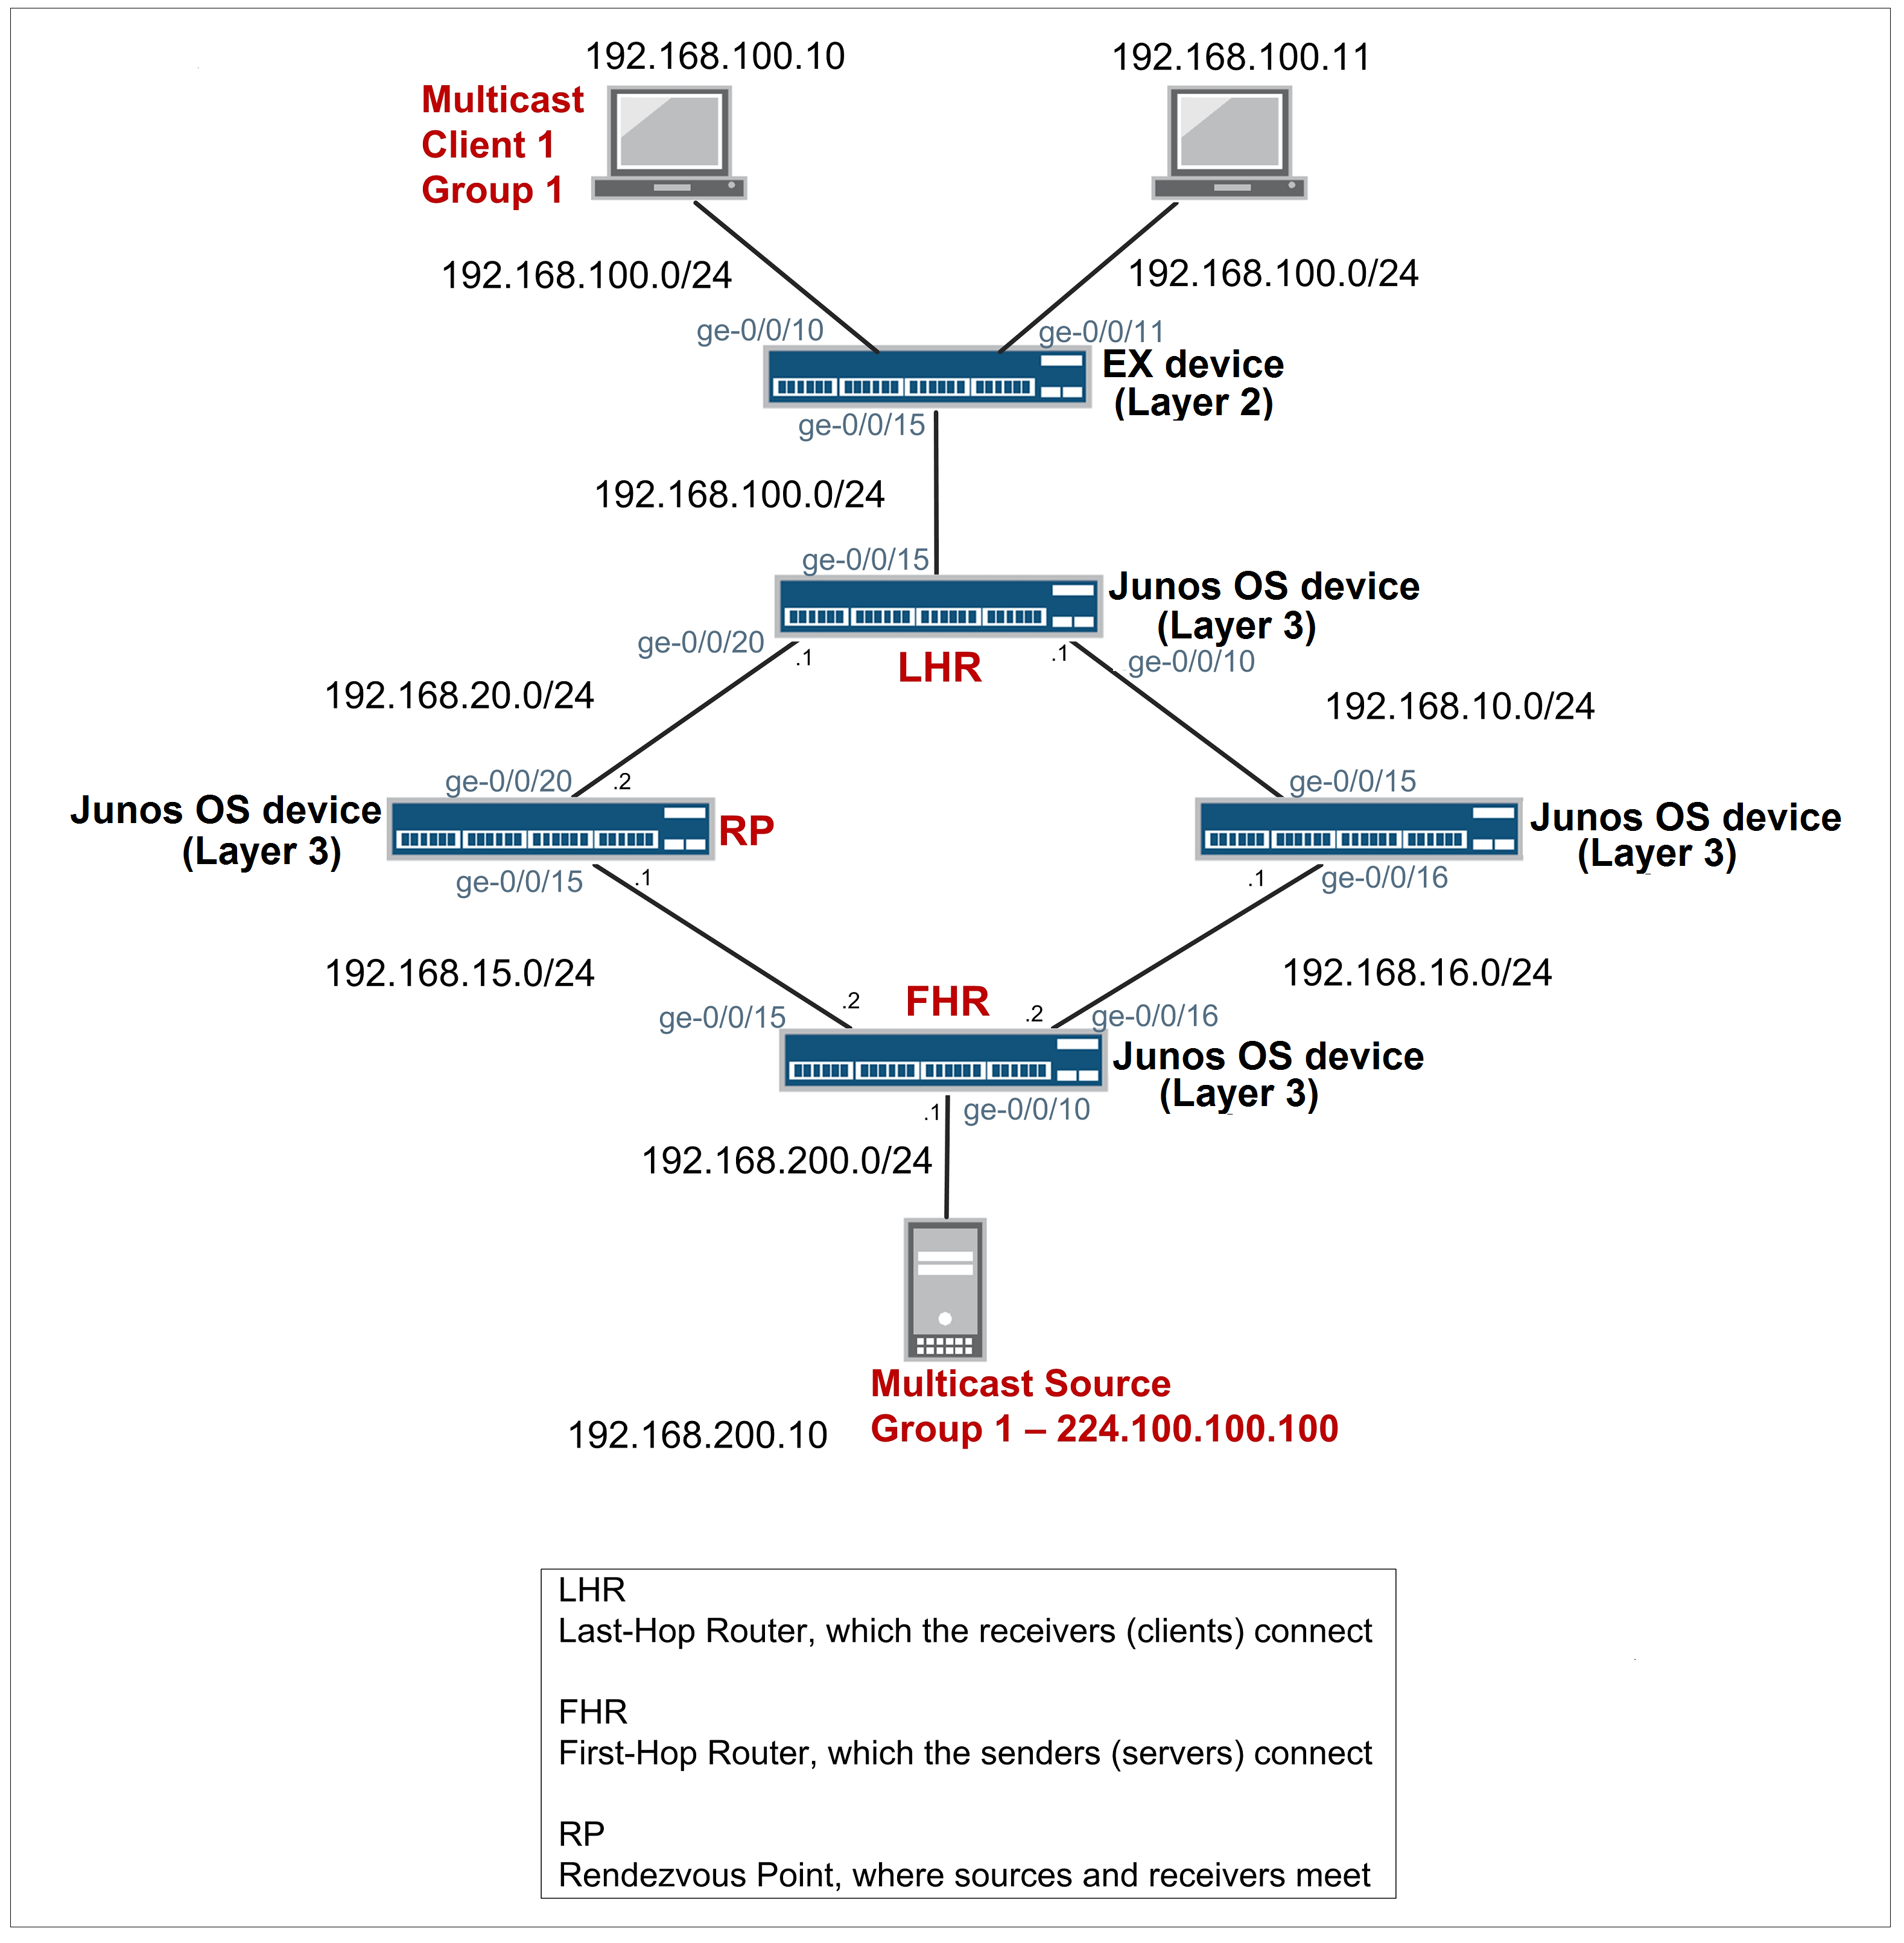 råb op om forladelse Se internettet Sample Multicast Network Topology with Junos OS devices